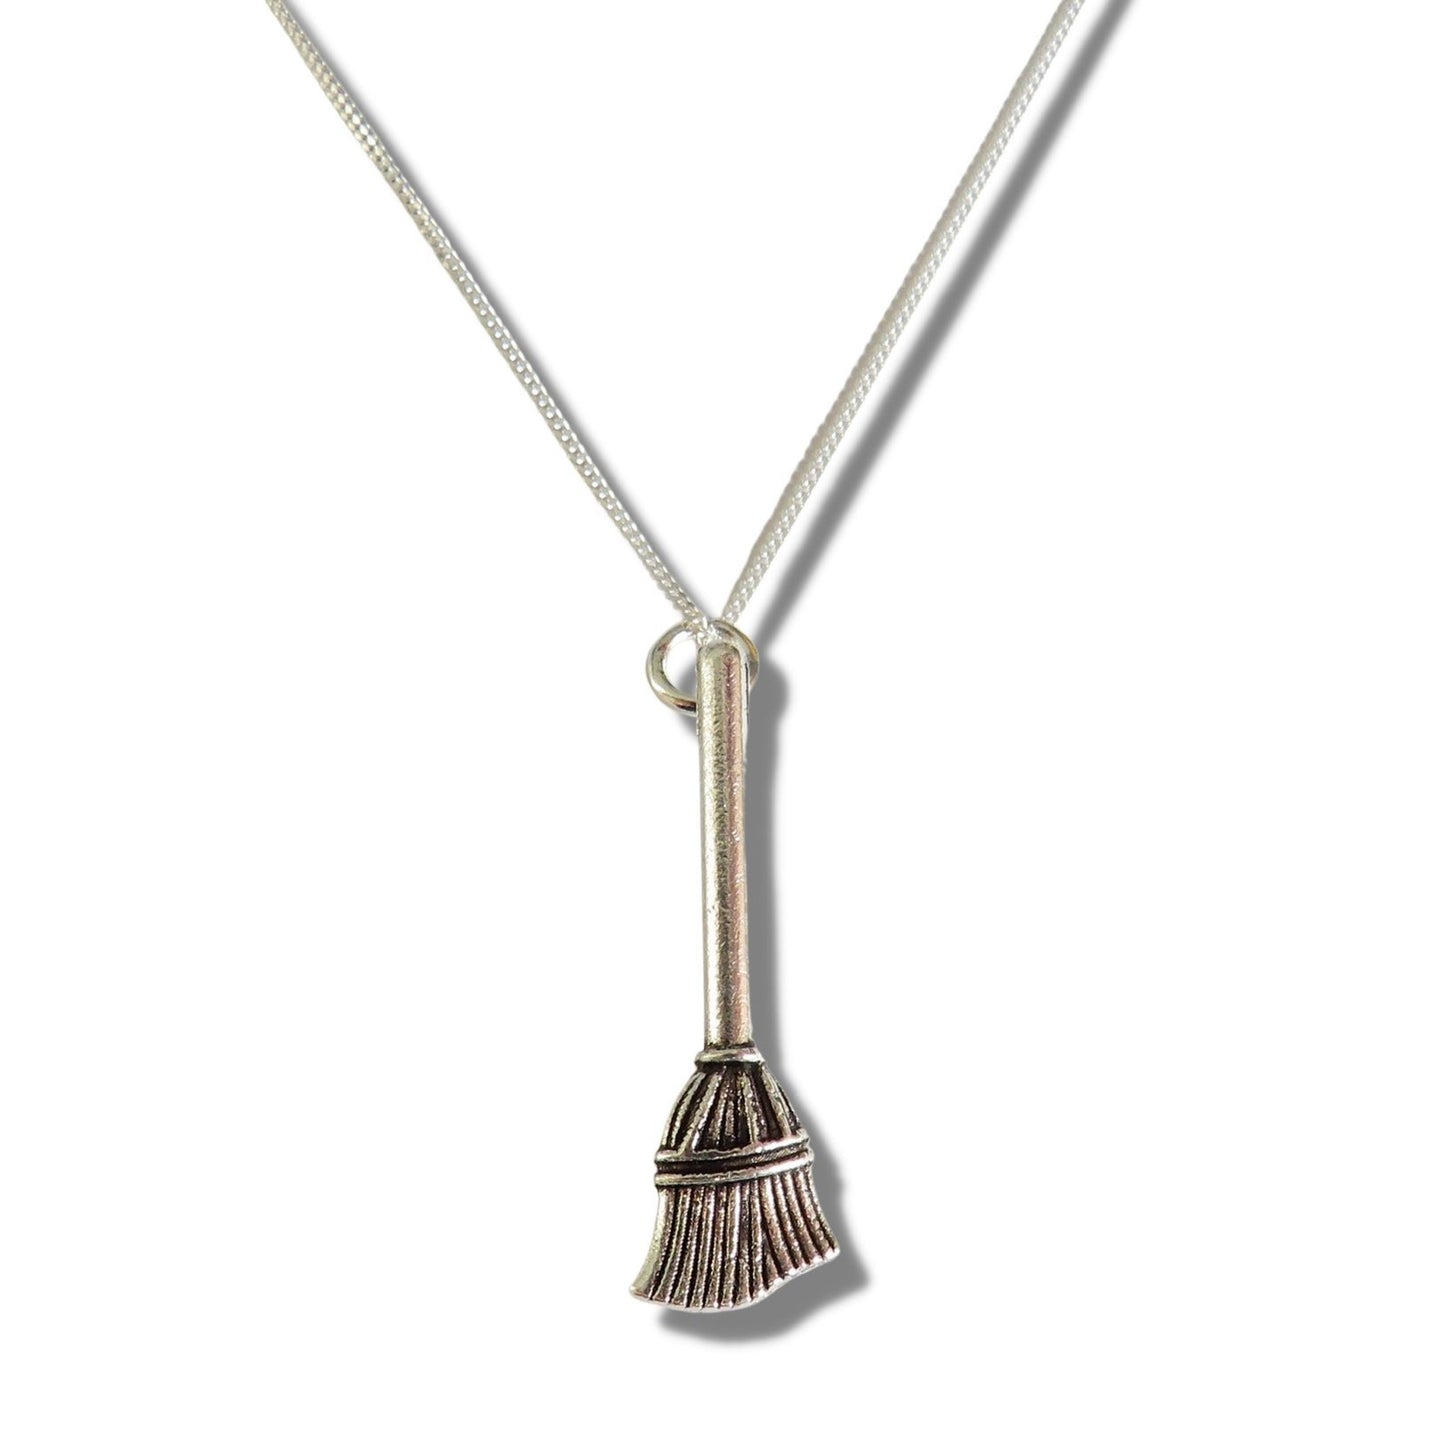 Broom Silver Necklace